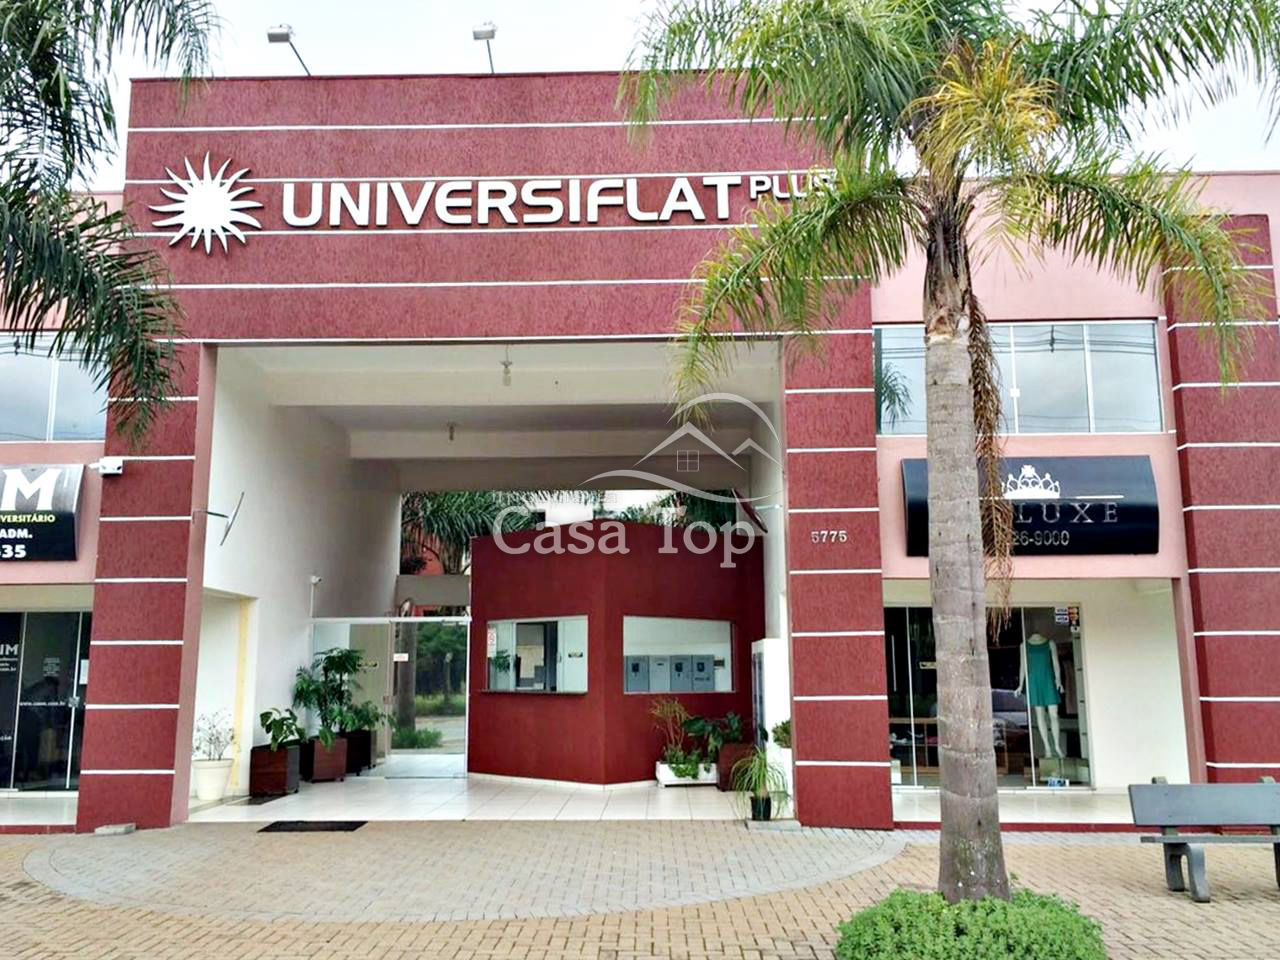 Quitinete mobiliada à venda Condomínio Universiflat Plus - Uvaranas